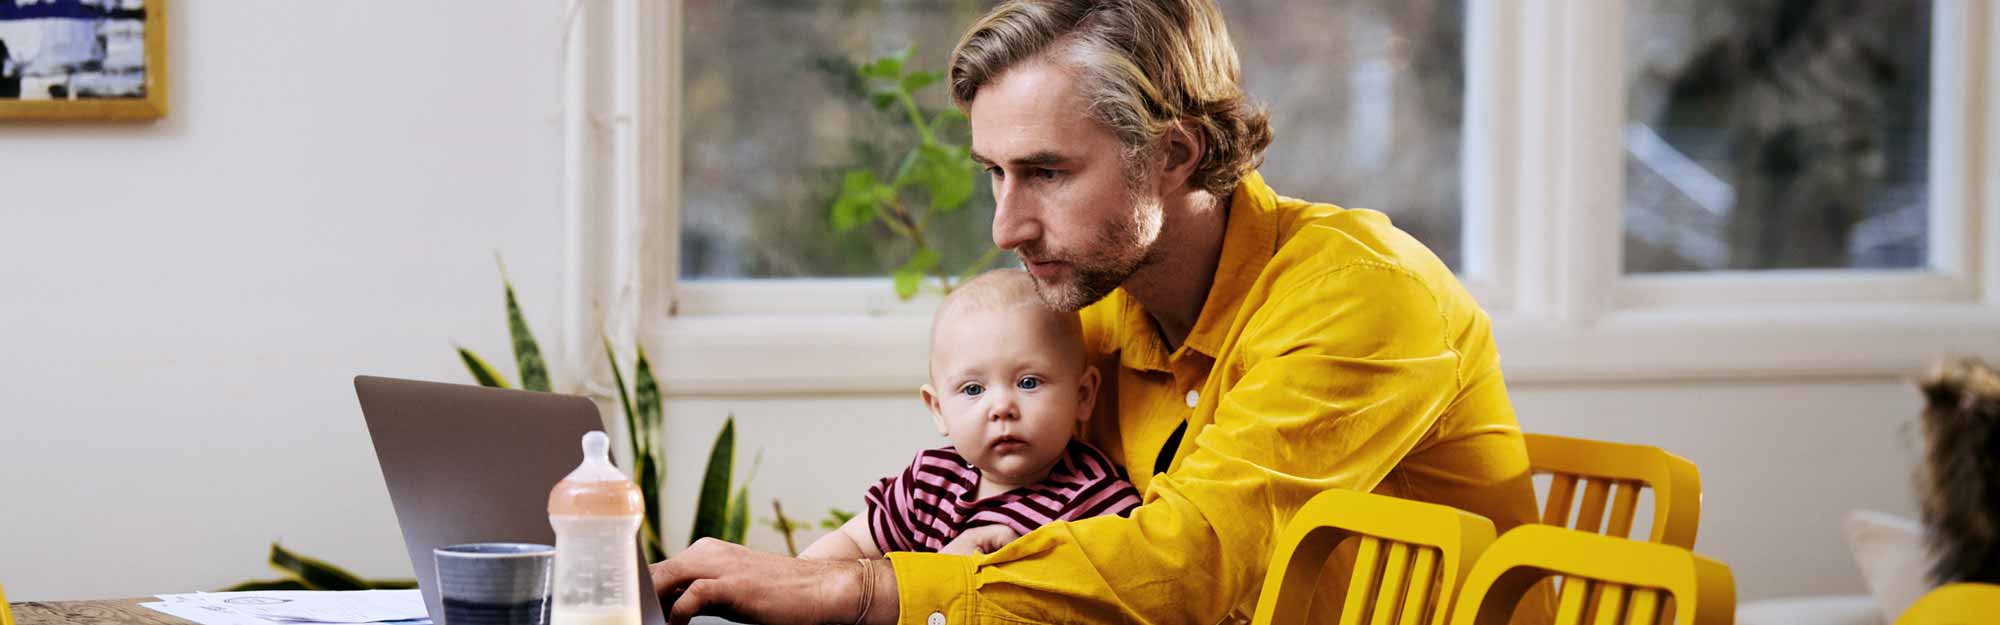 En pappa skriver på datorn med en bebis i knät